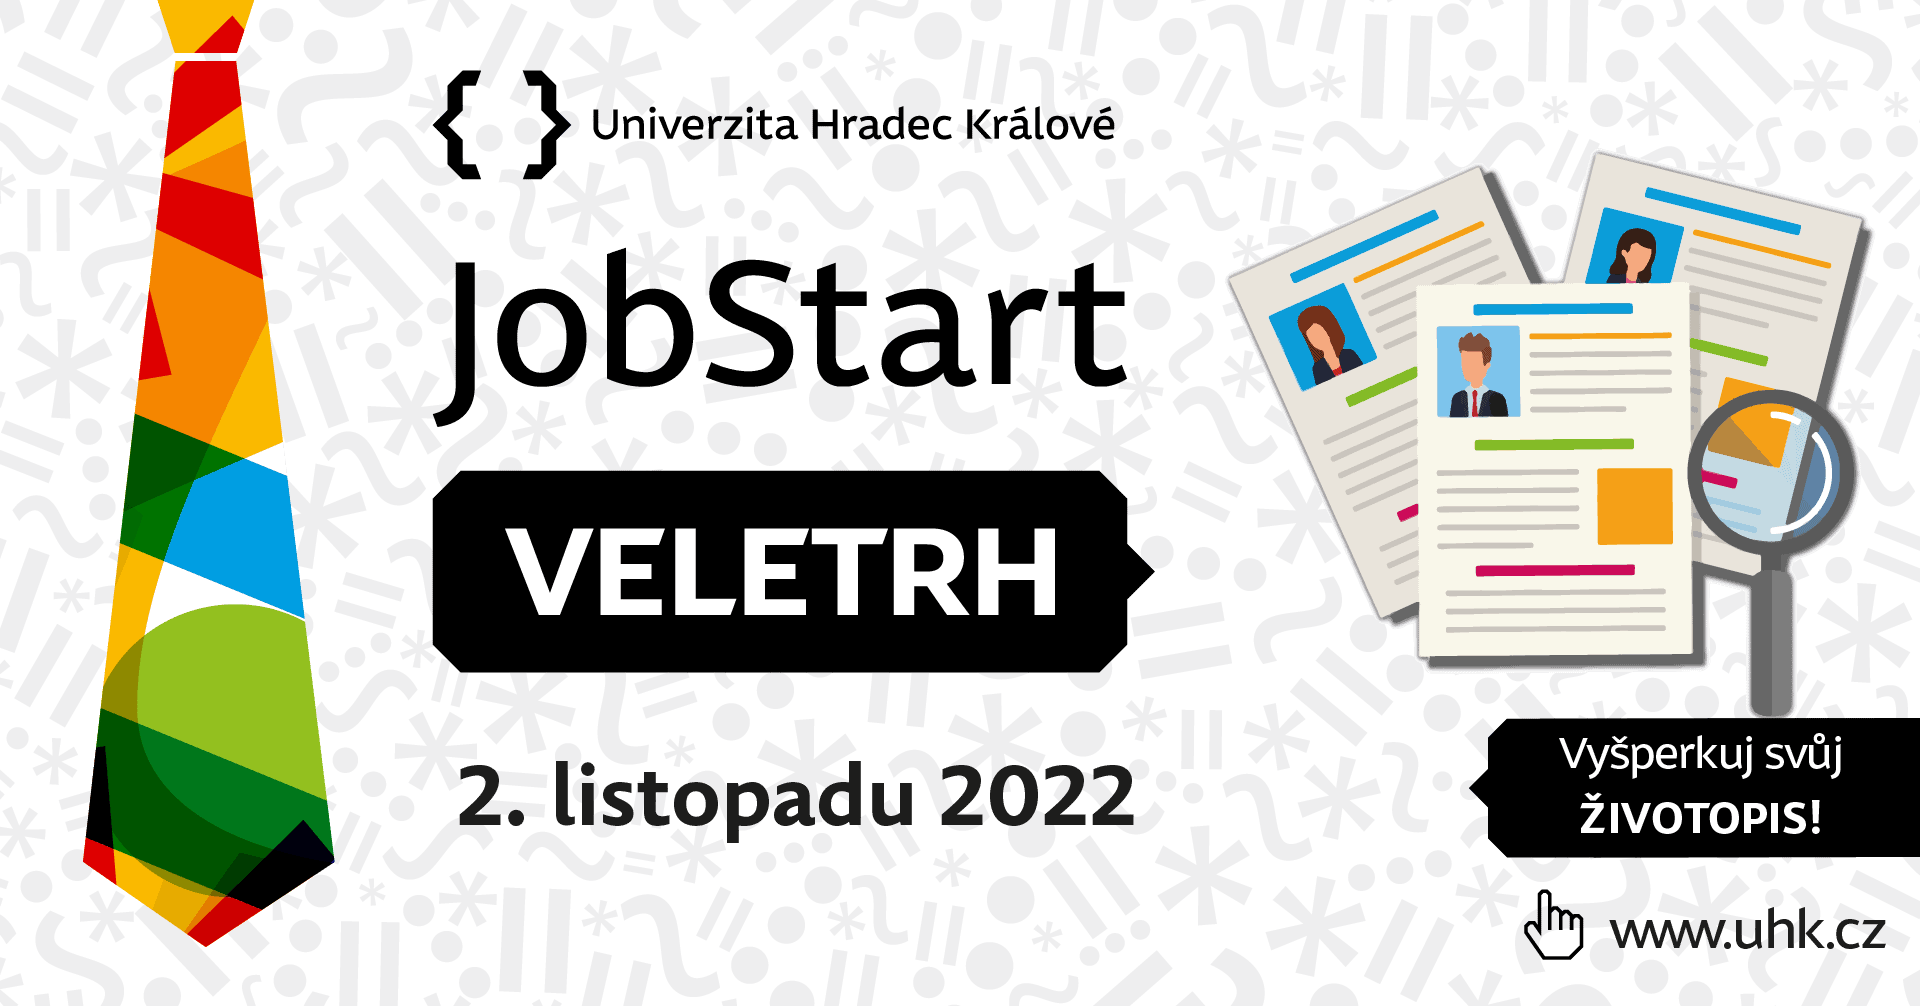 Přečtete si více ze článku JobStart VELETRH 2022